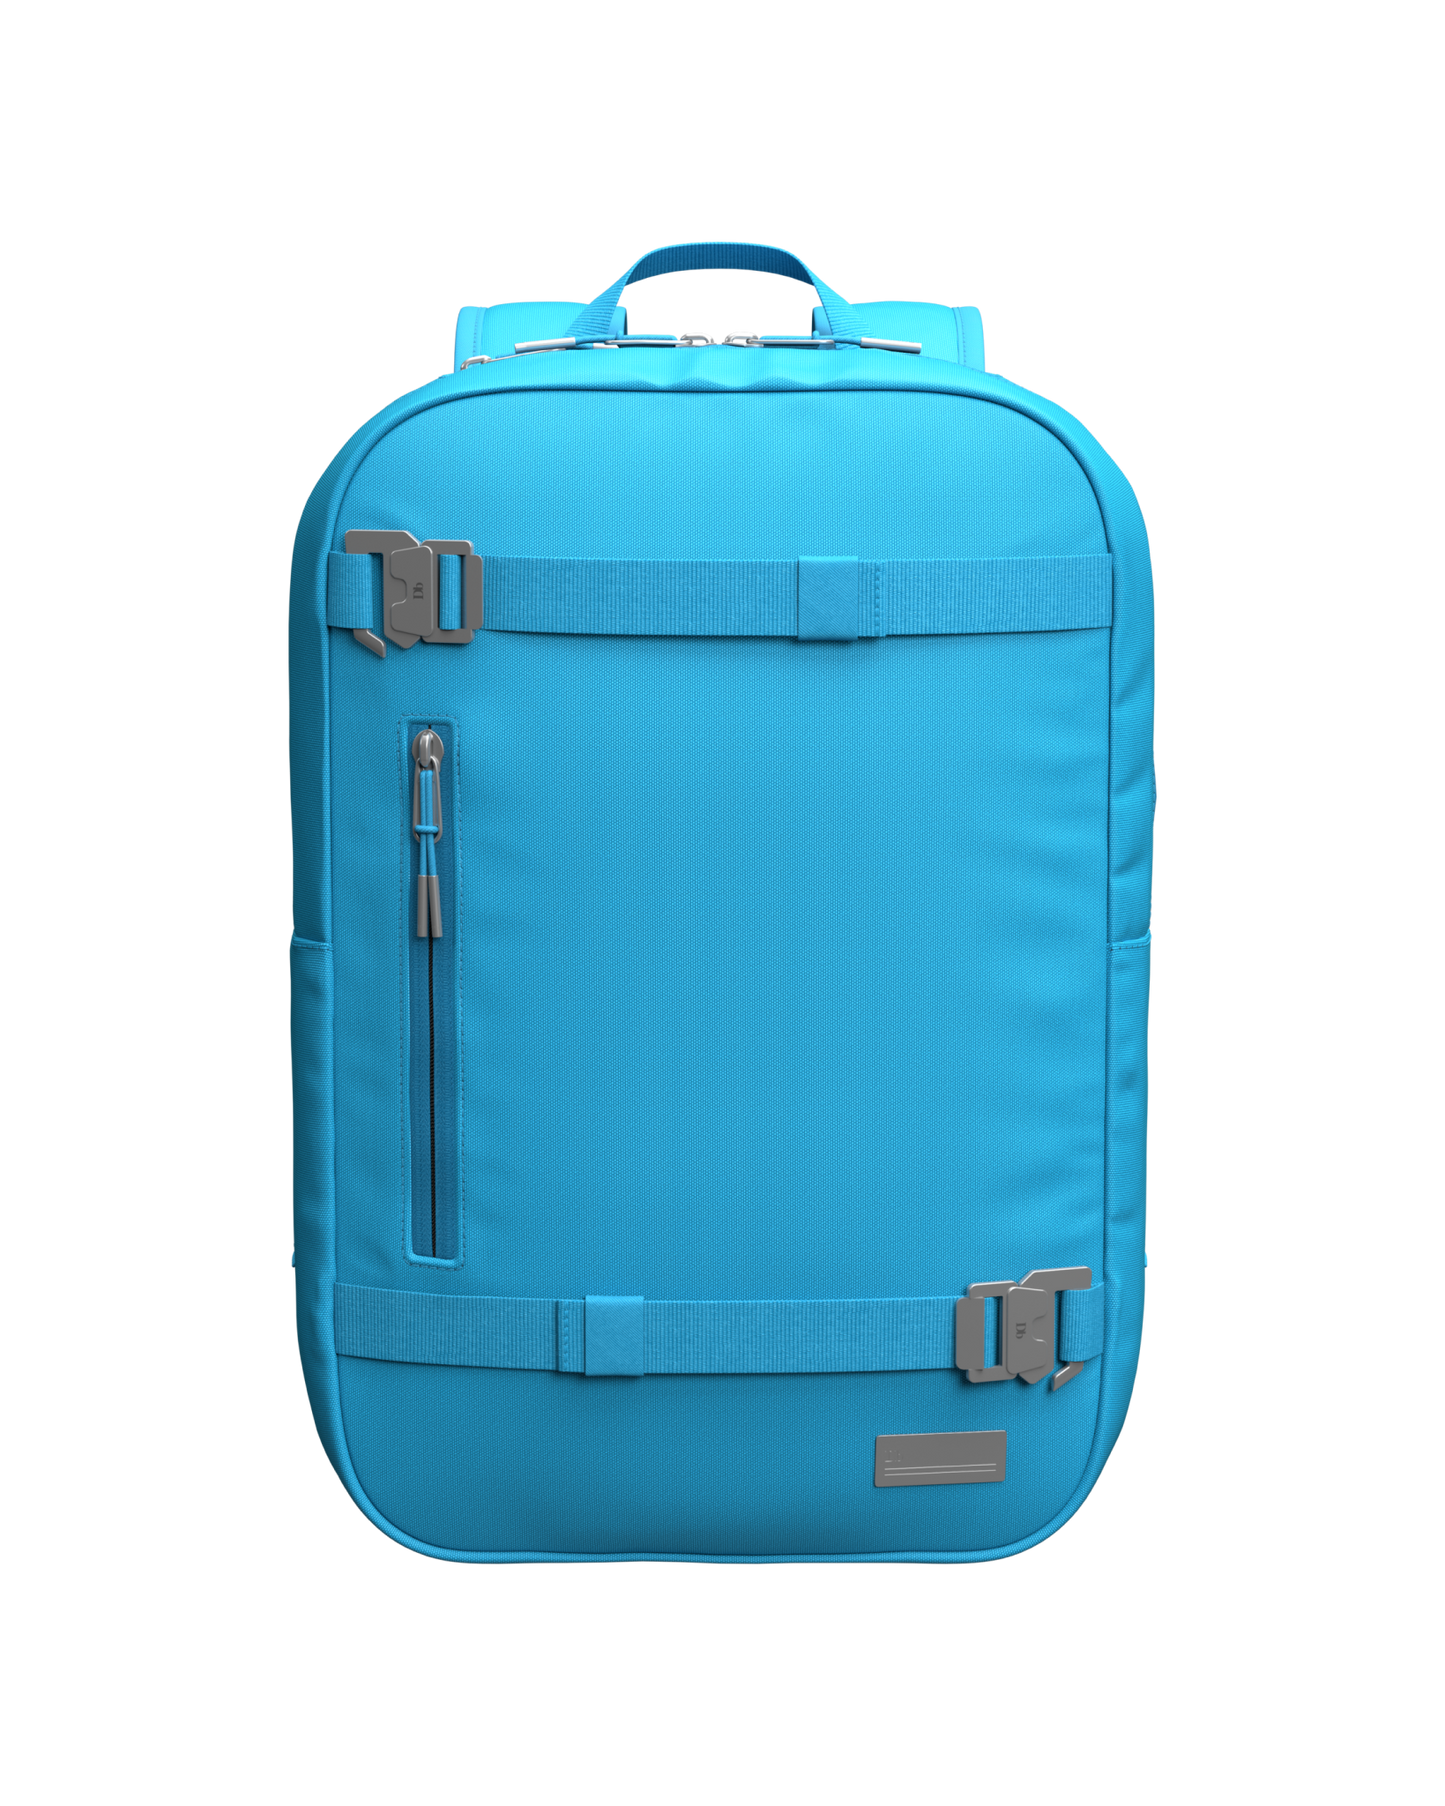 The Varrldsvan 17L Backpack